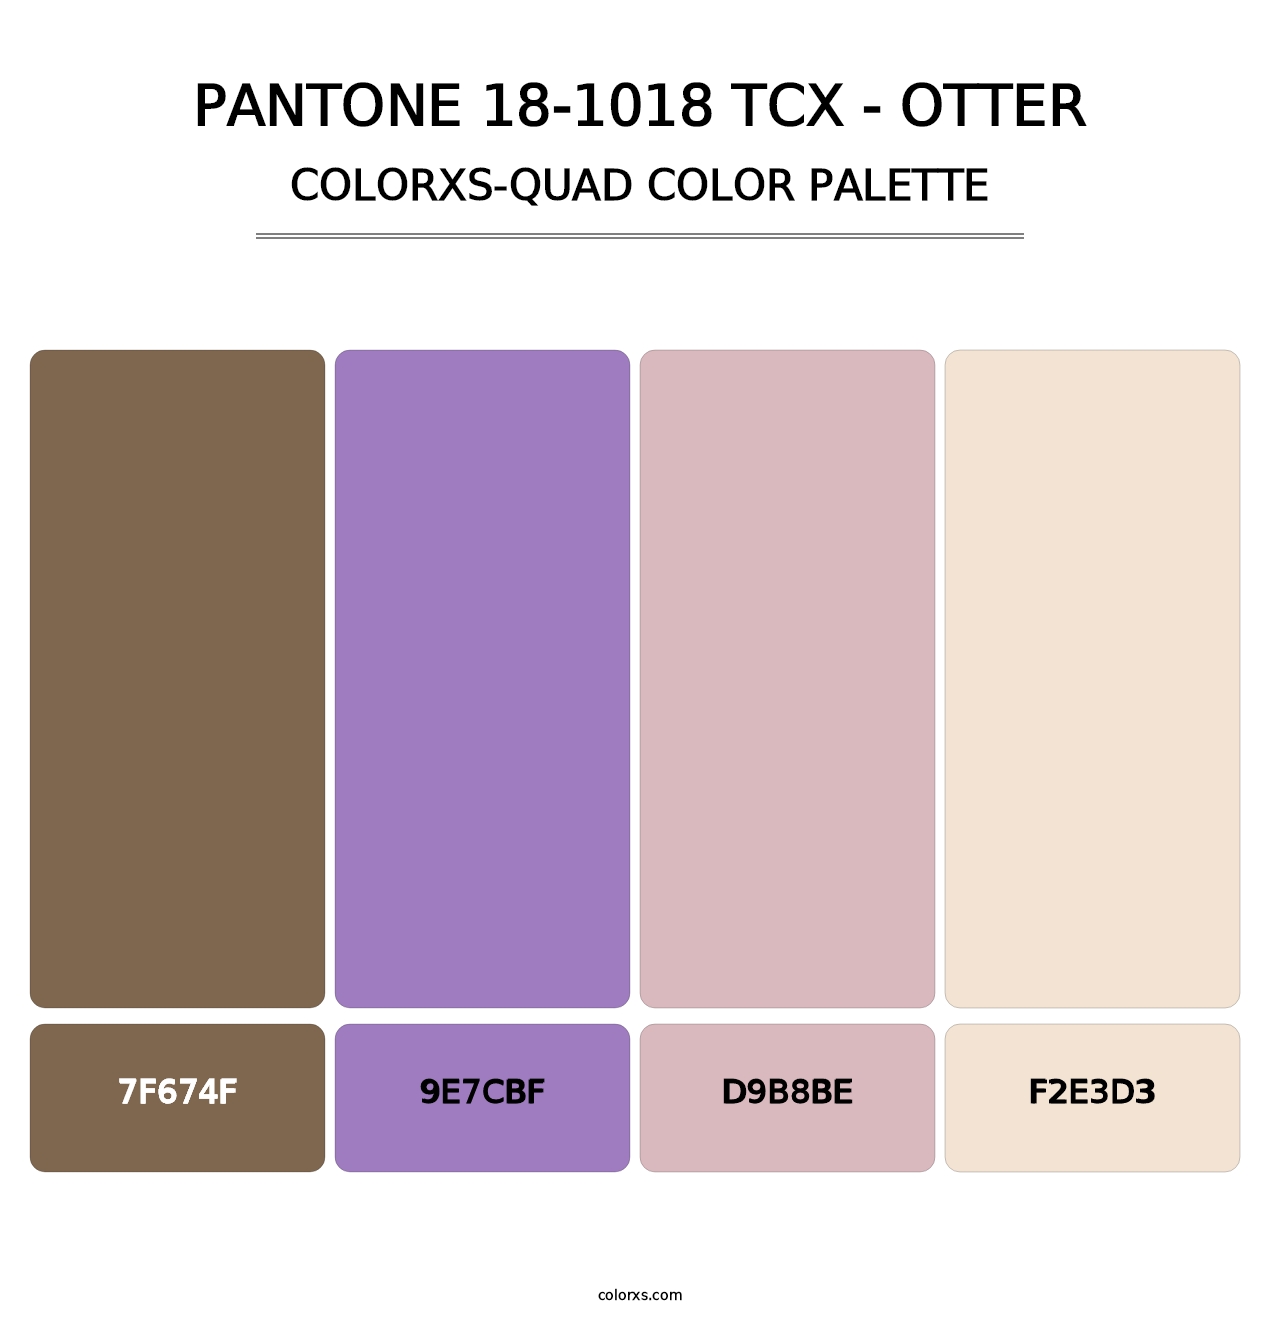 PANTONE 18-1018 TCX - Otter - Colorxs Quad Palette